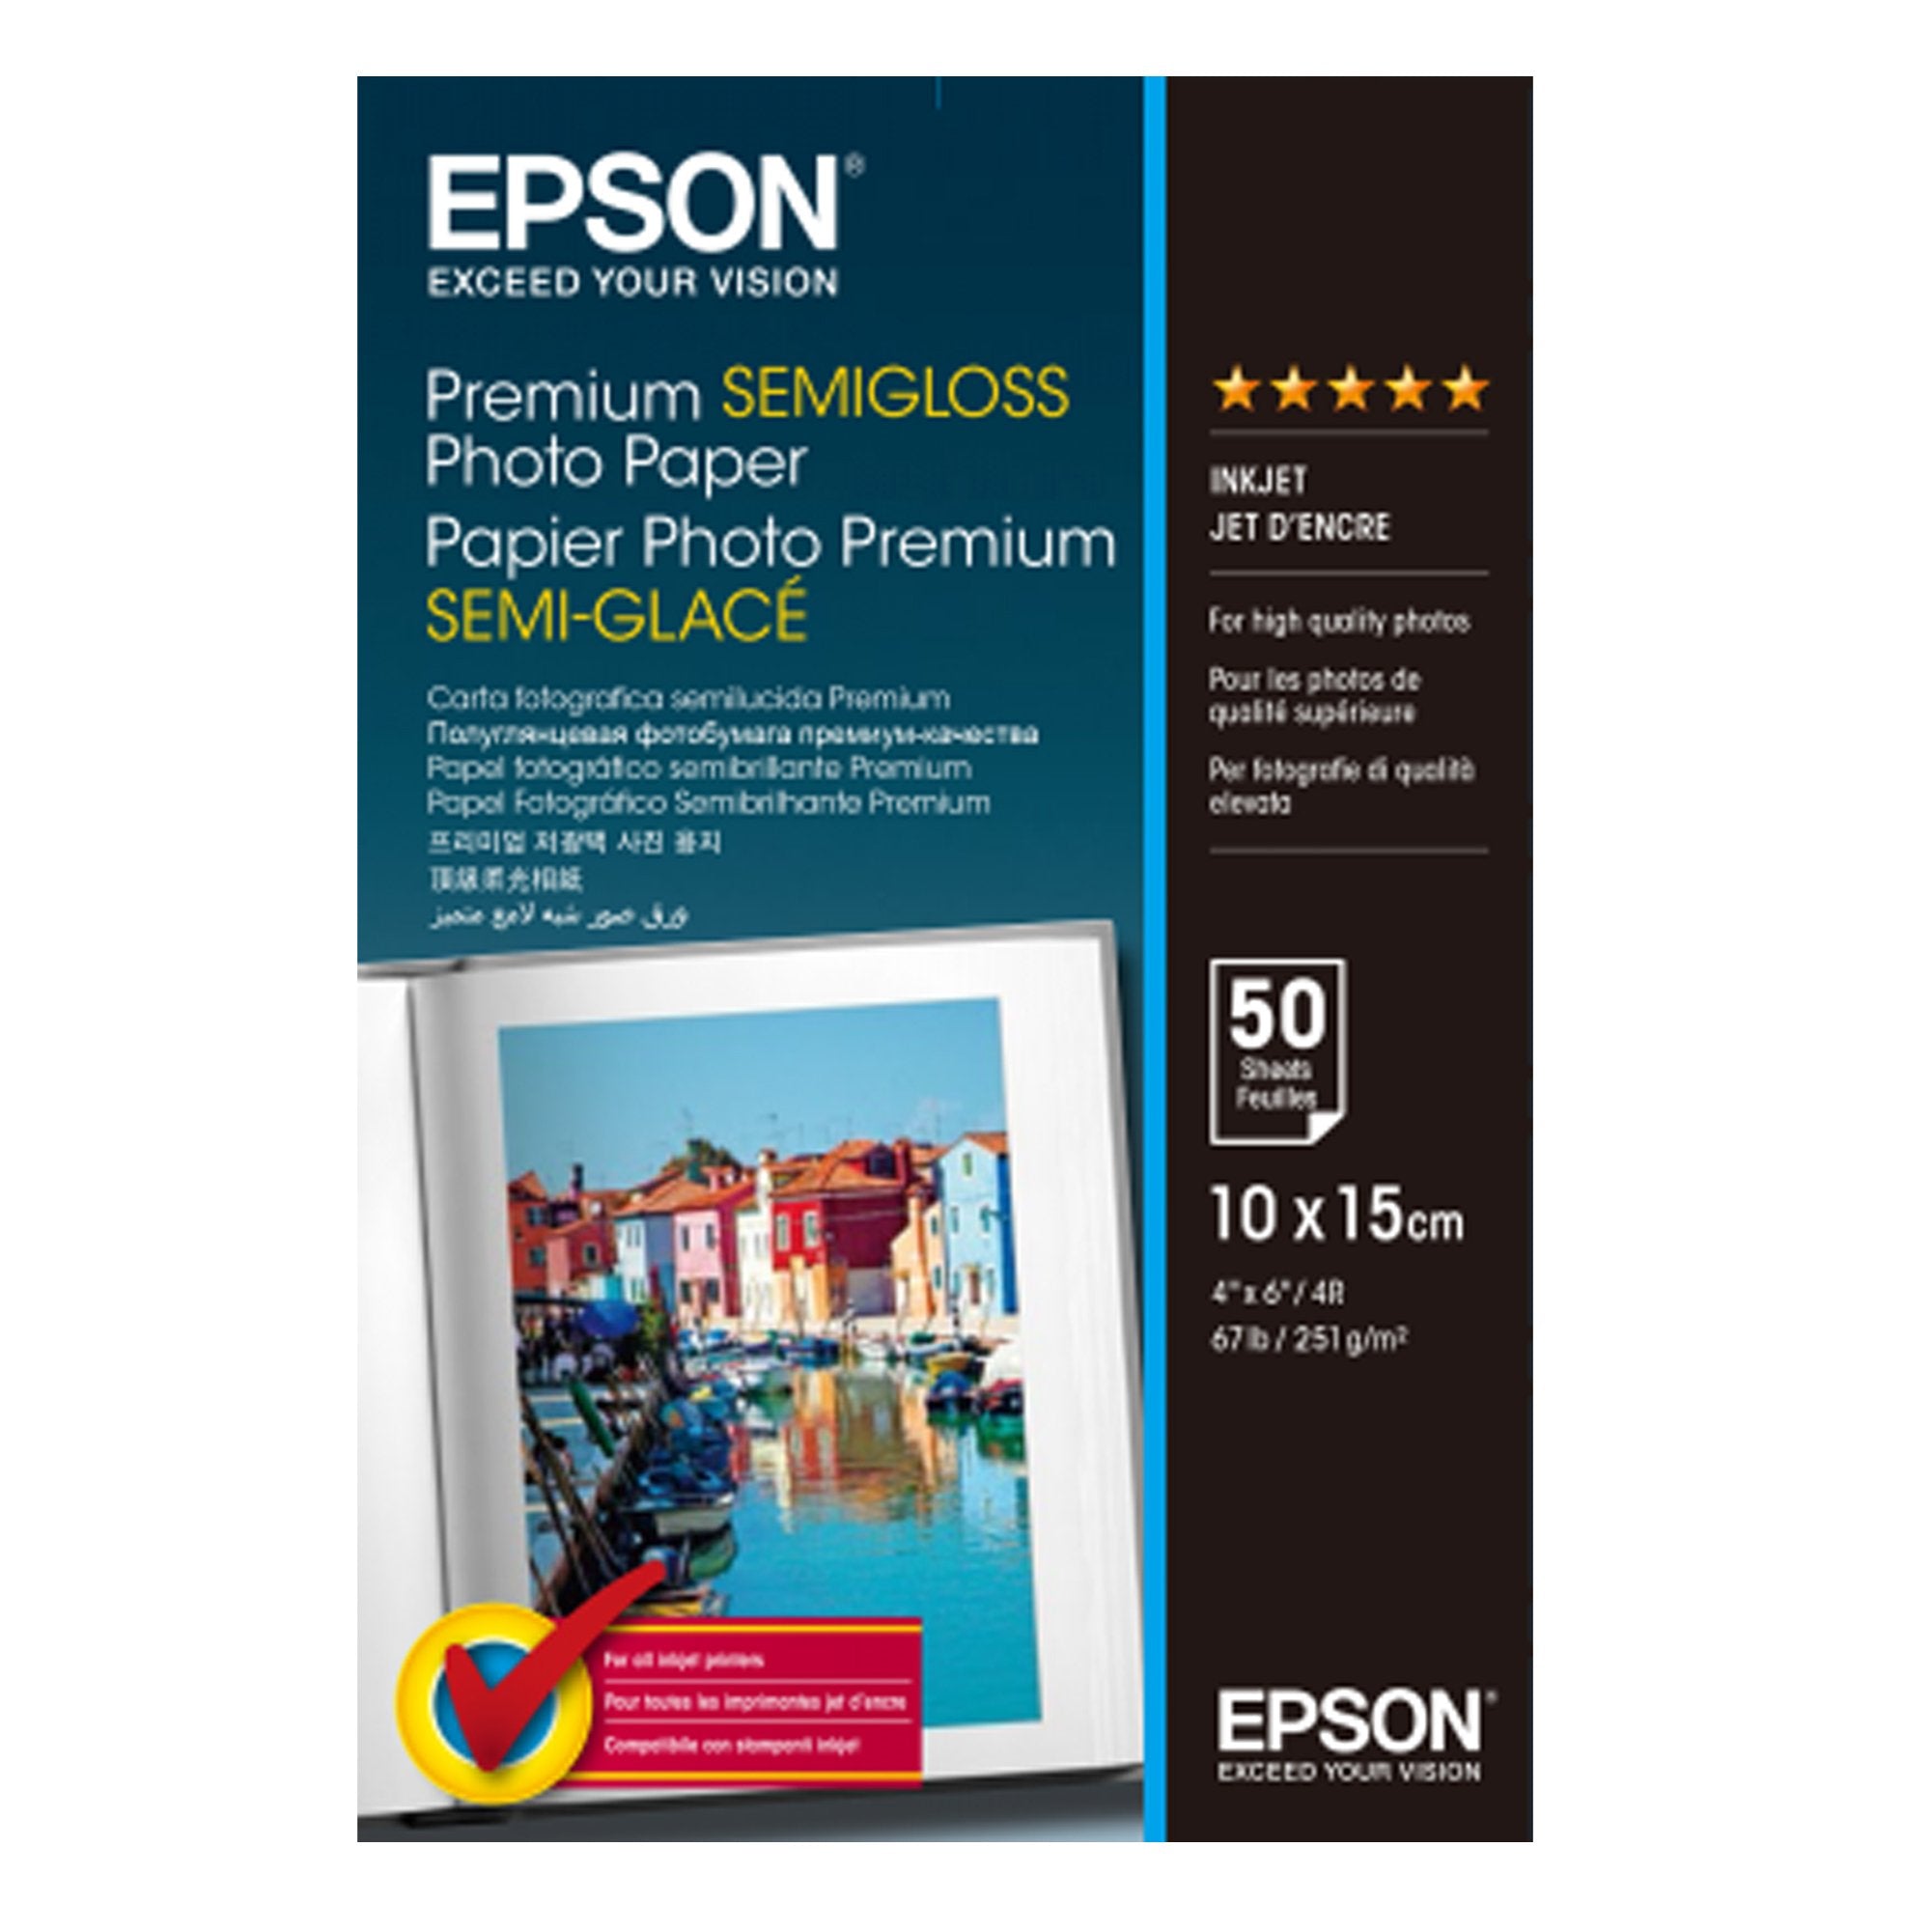 epson-carta-fotografica-semilucida-premium-50fg-251gr-10x15cm-4x6